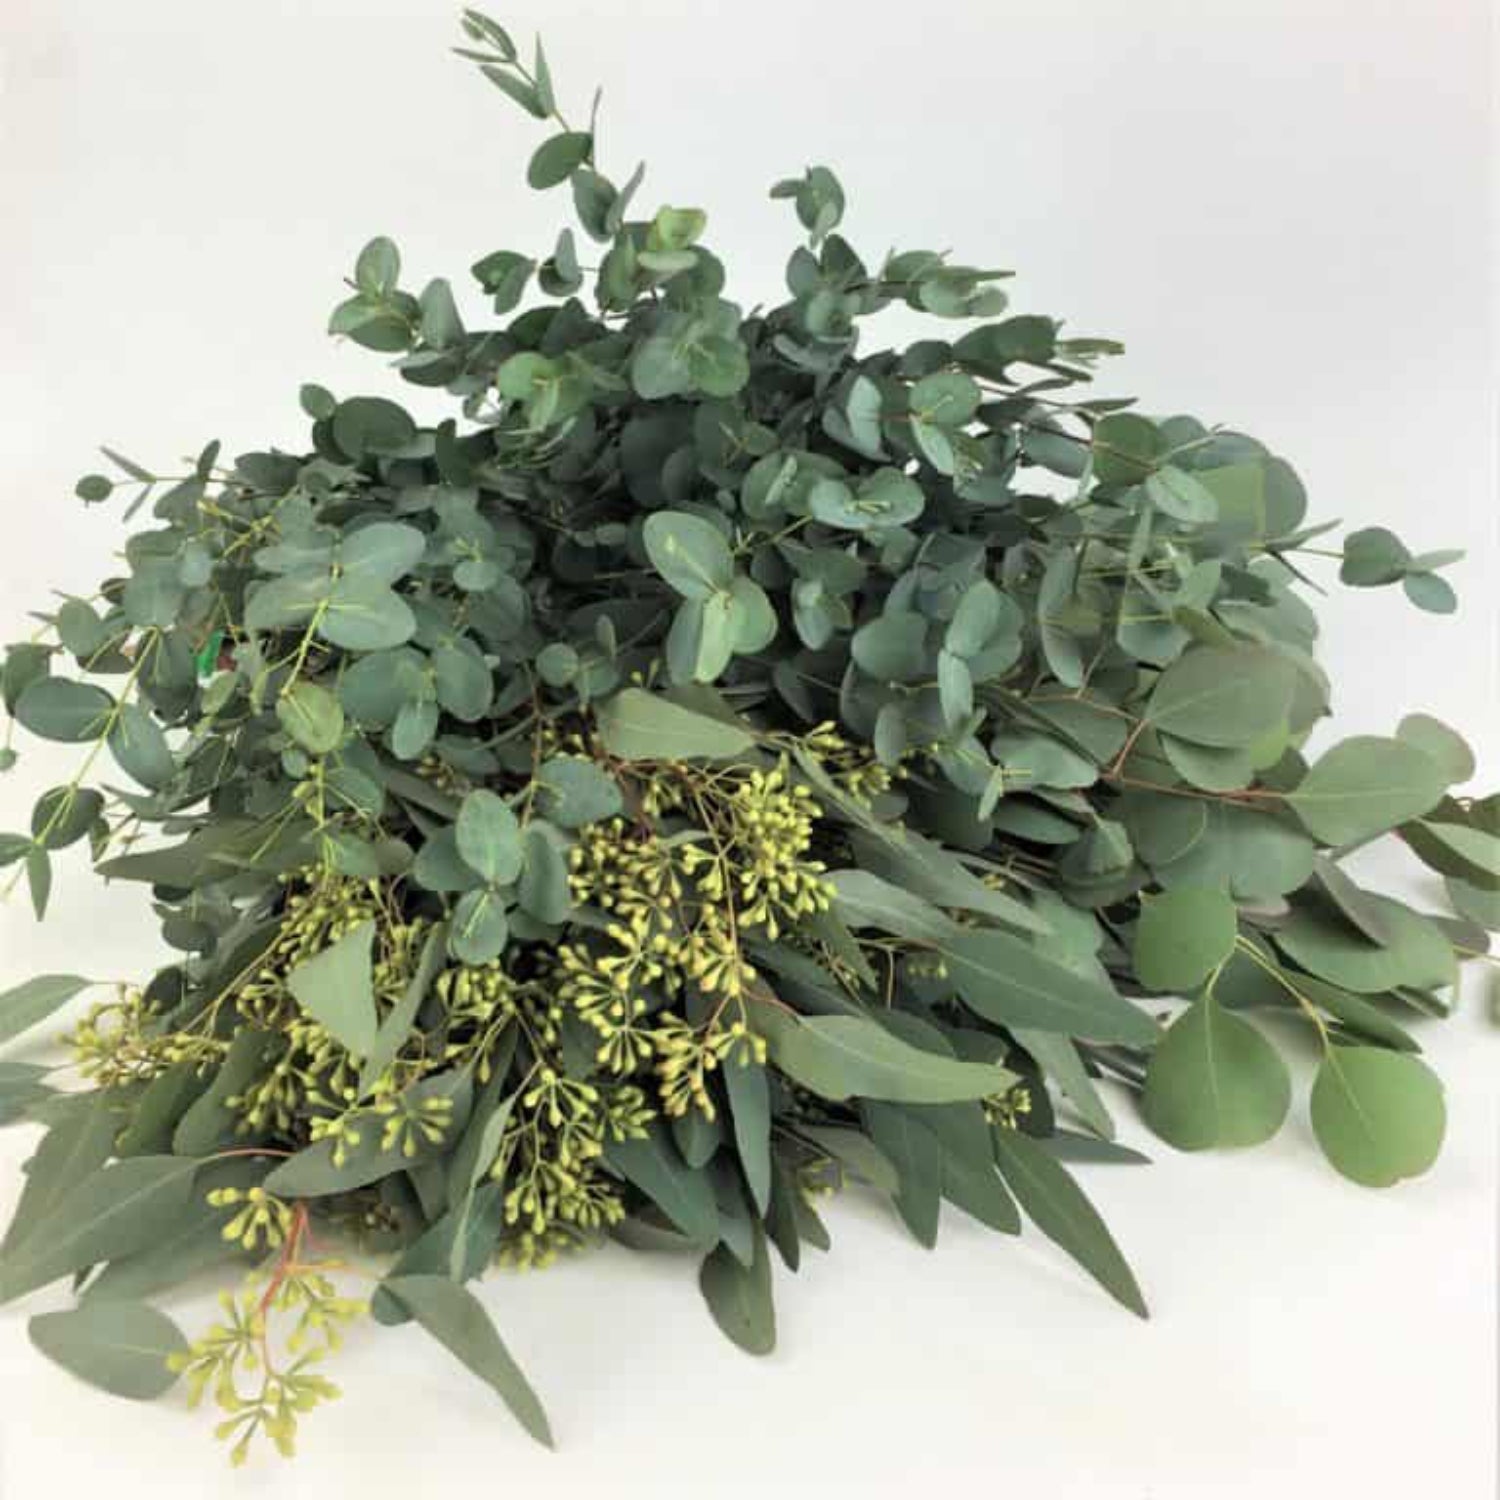 Mixed Eucalyptus Bouquet